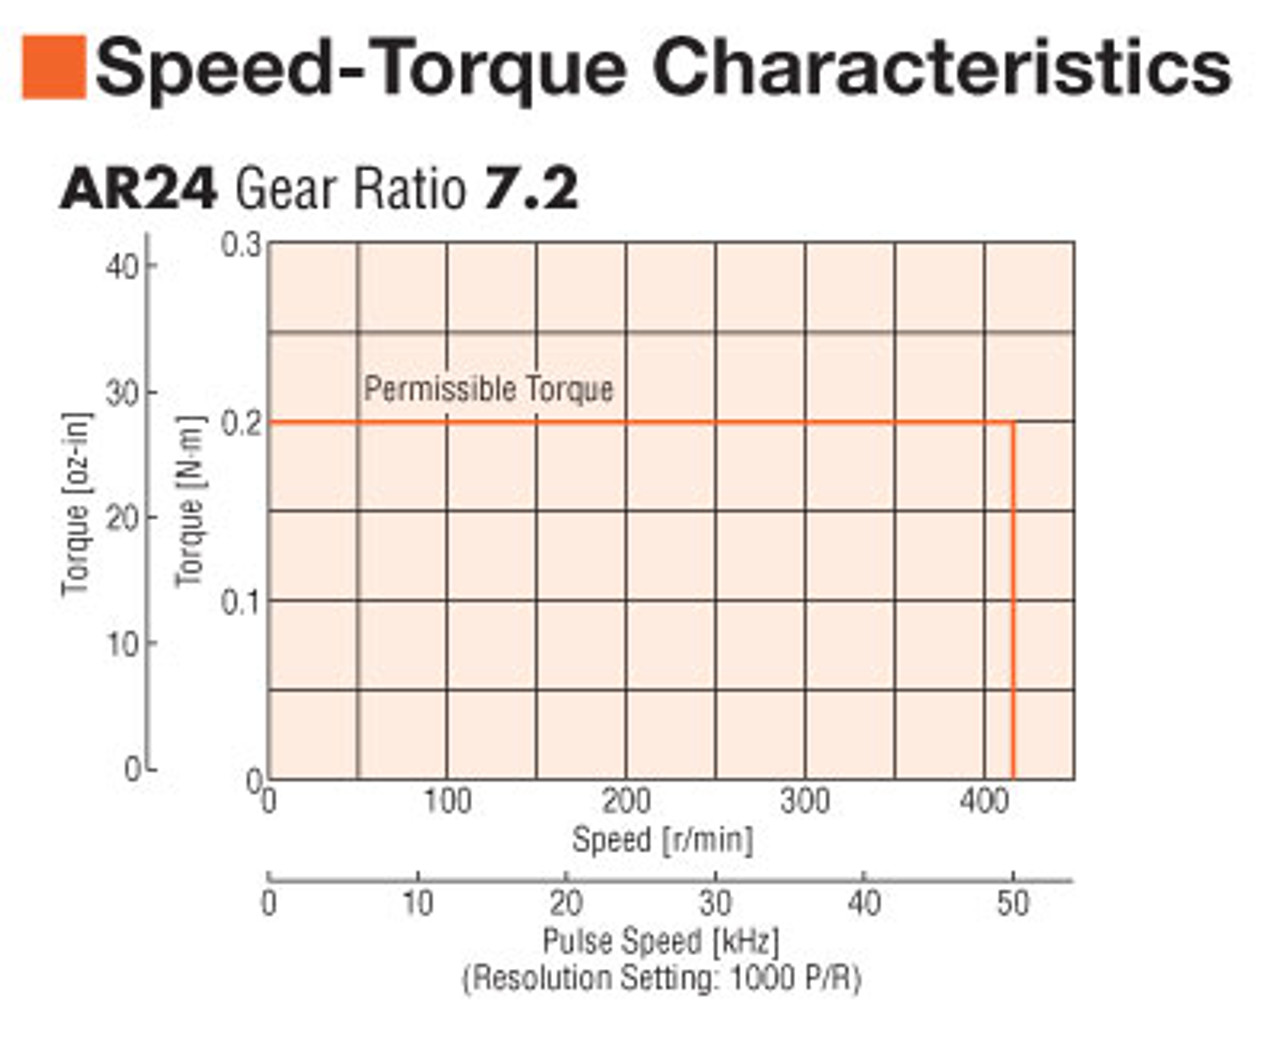 AR24SAK-T7.2-3 - Speed-Torque